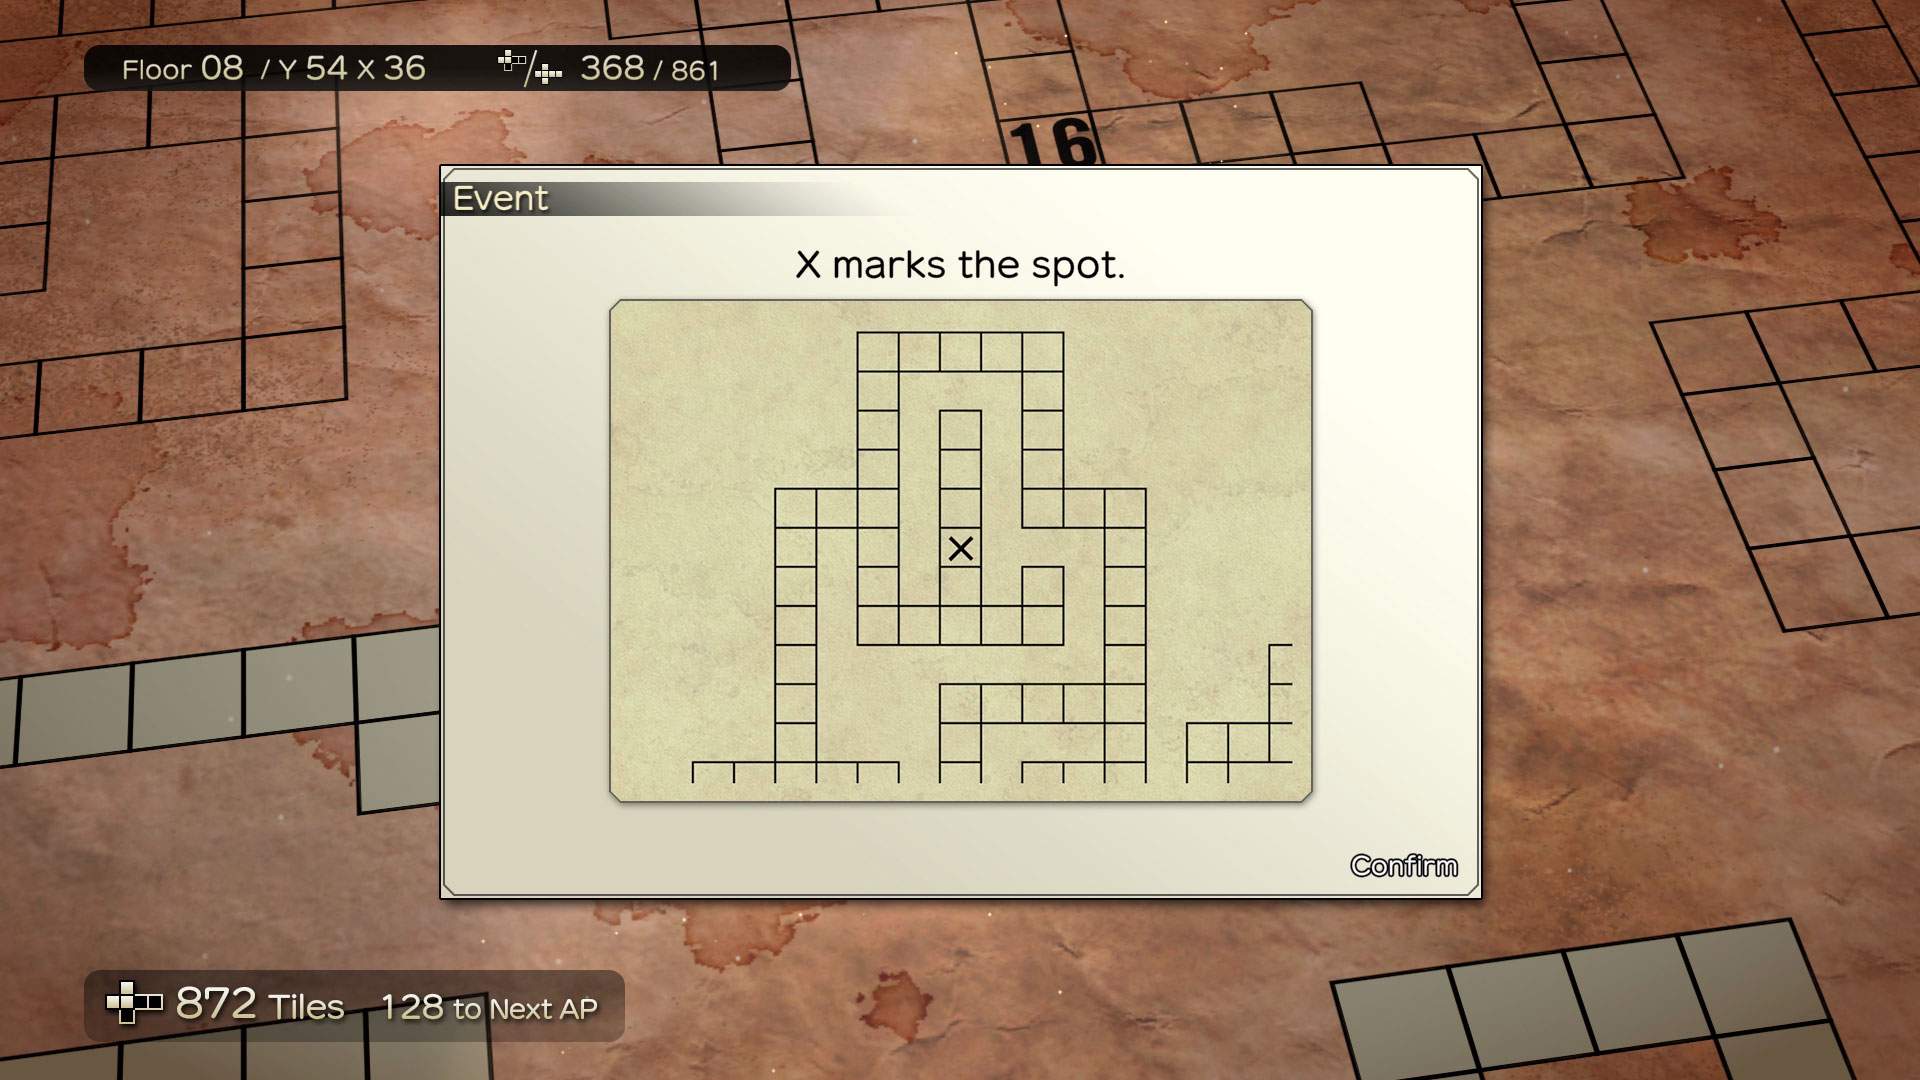 Image de gameplay montrant un événement : « X indique le bon endroit » avec une carte et une croix.